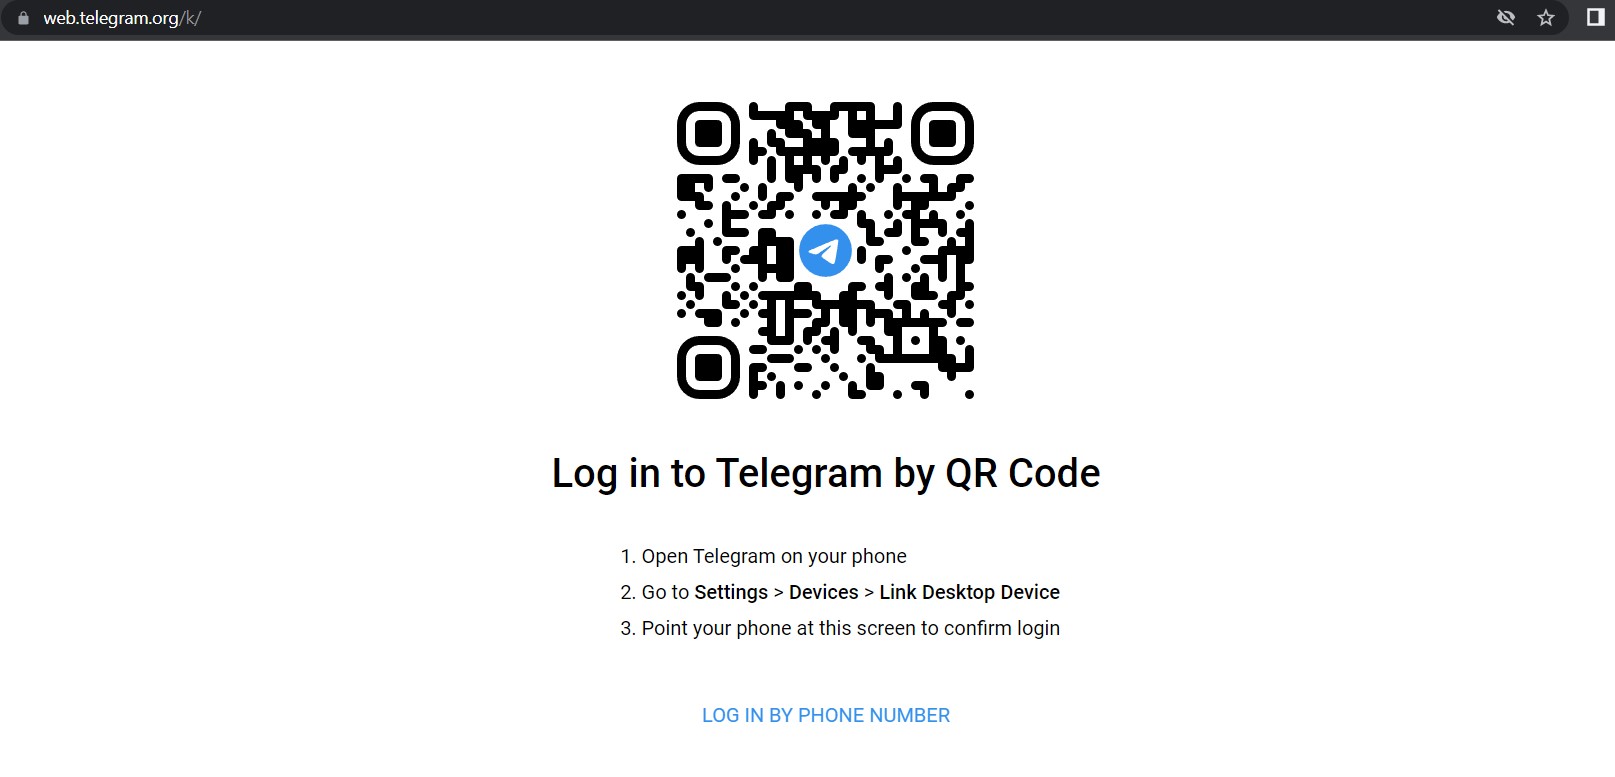 ورود به تلگرام با QR Code در نسخه وب